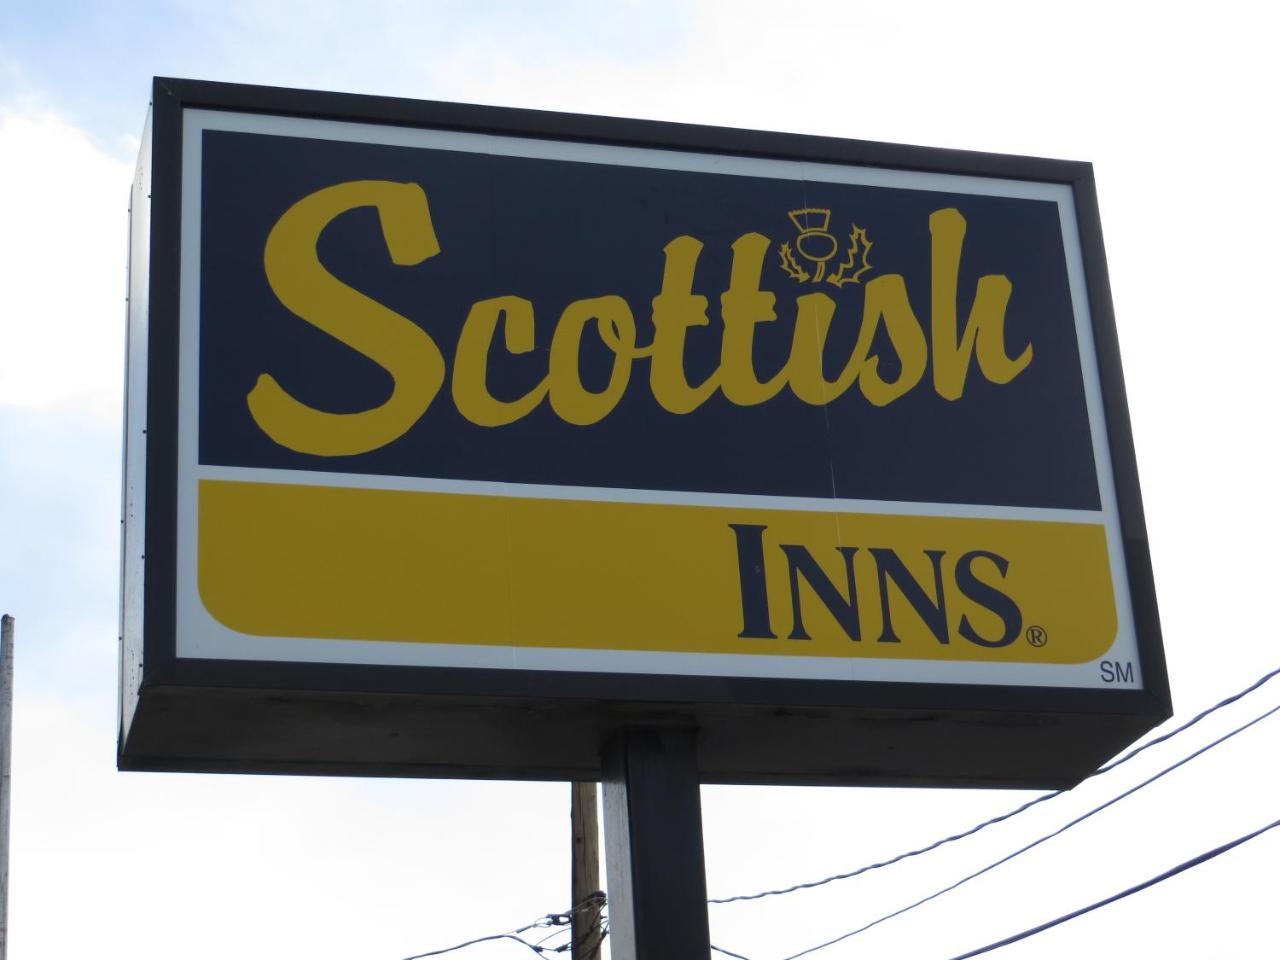 Scottish Inns Winnemucca